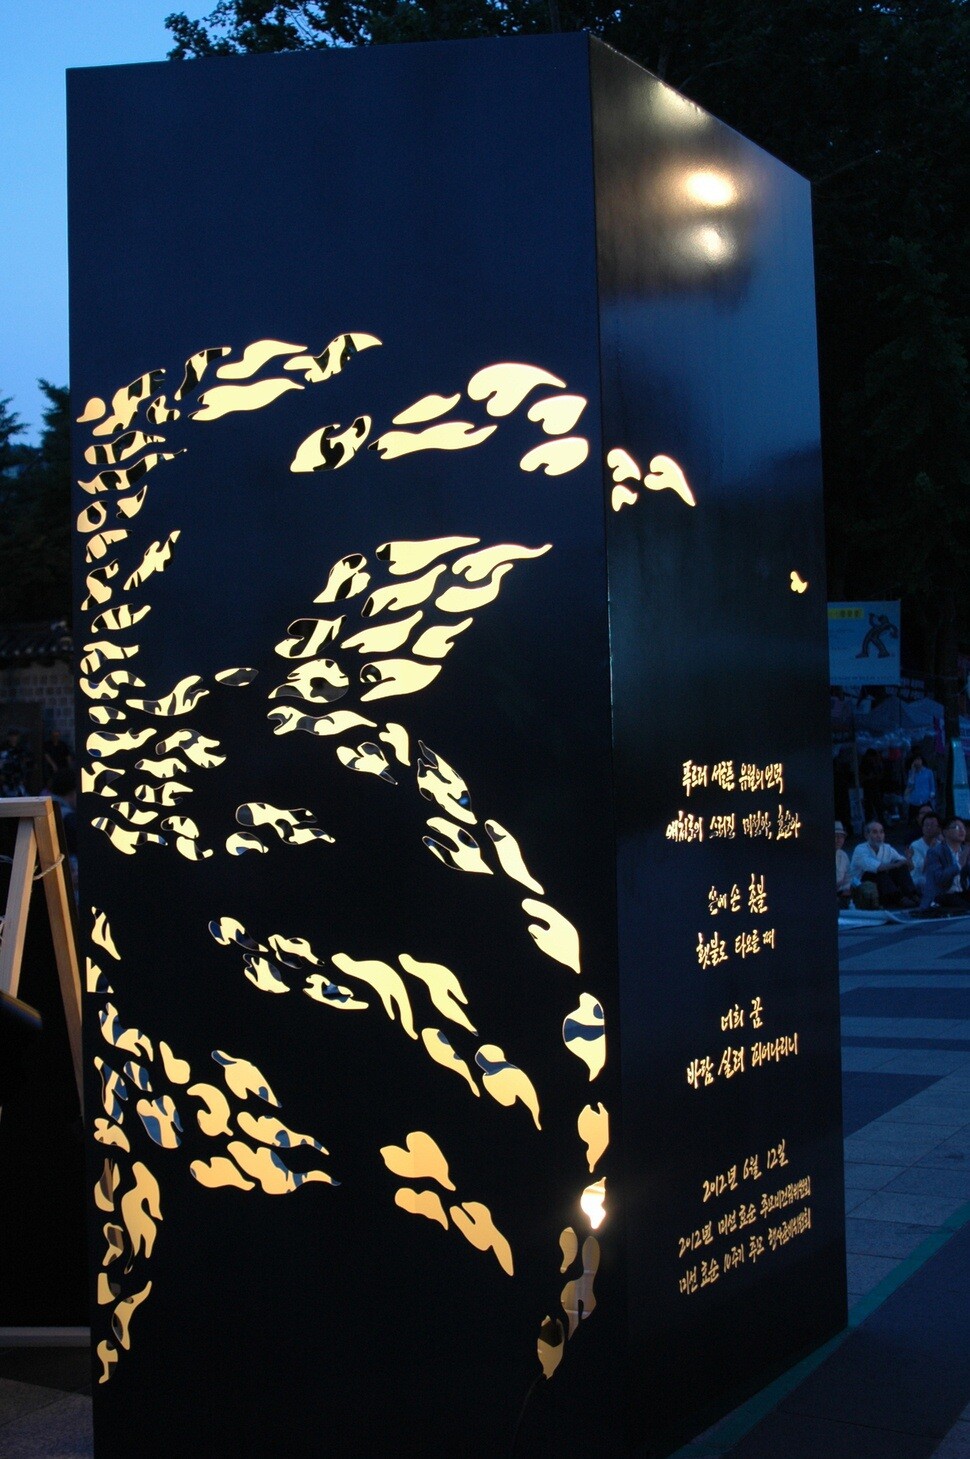 The memorial to Shin Hyo-sun and Shim Mi-seon